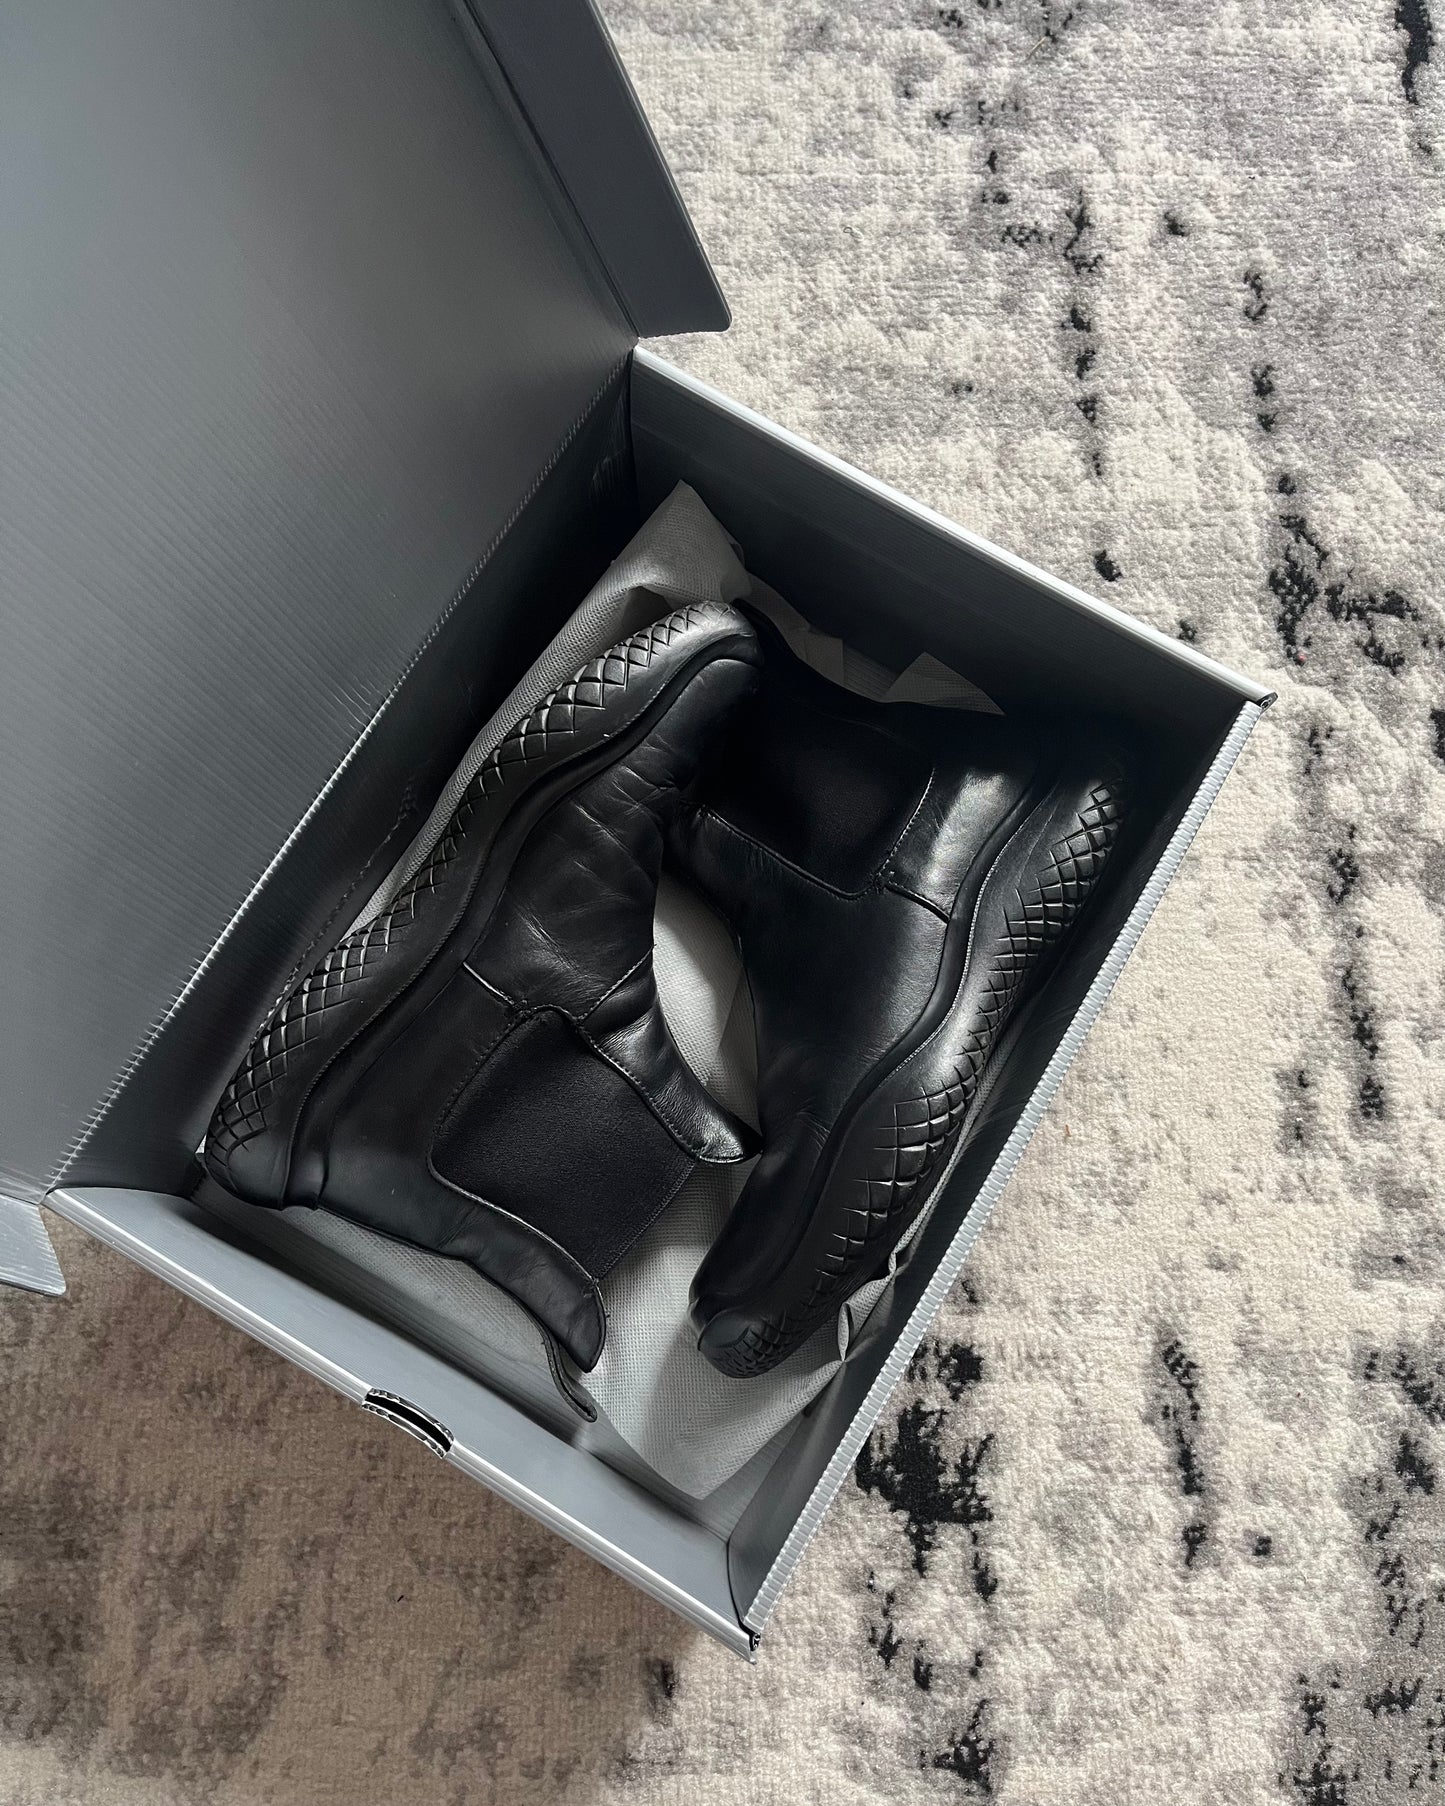 FW99 Prada Vibram Hybride Leather Boots (43eu/9,5us)